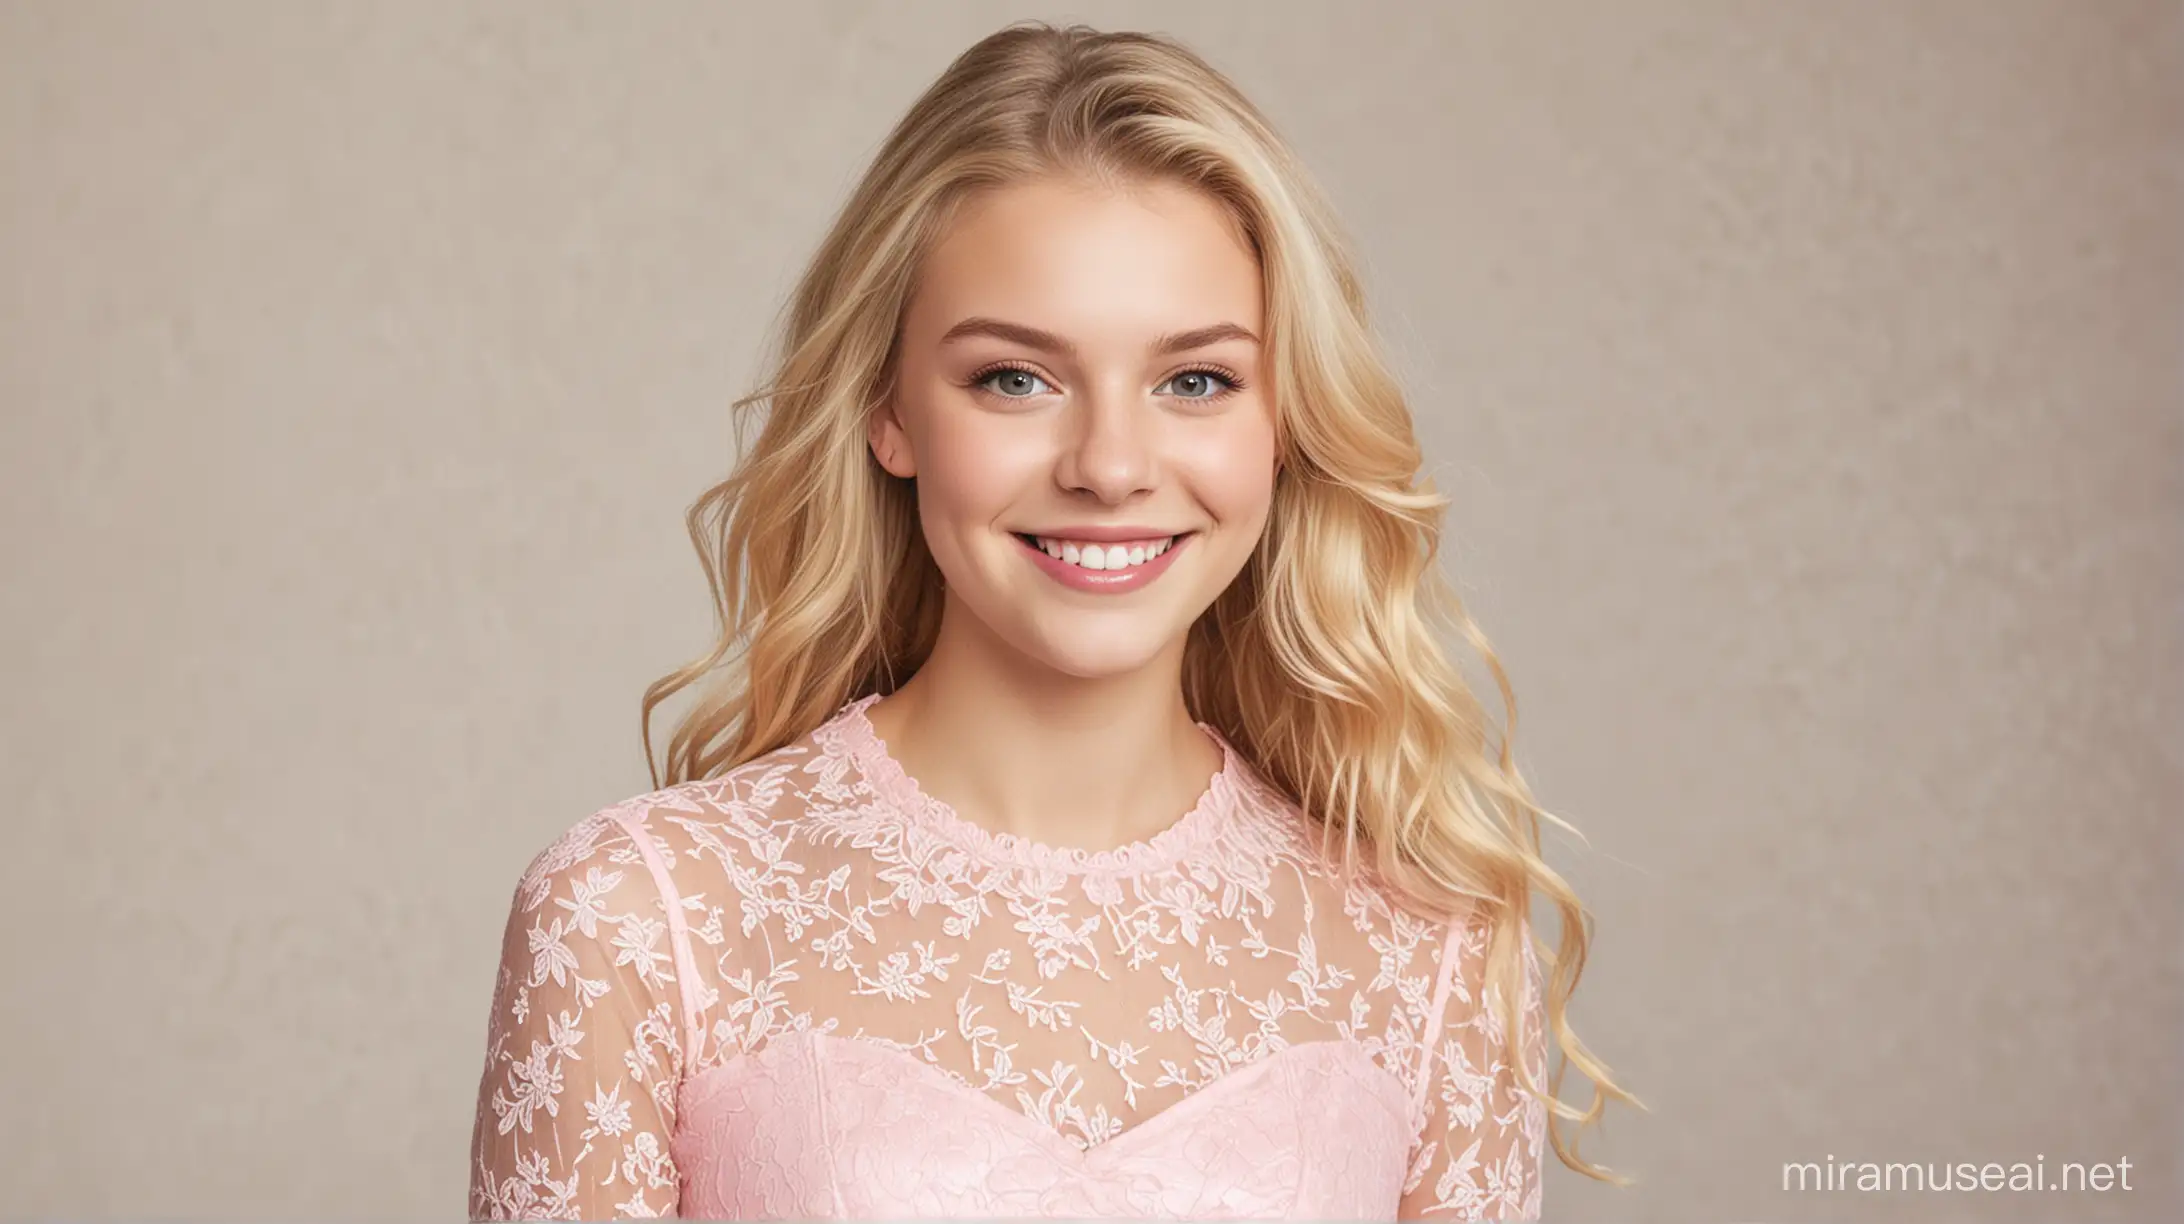 Teenage white girl, blonde hair, smiling at camera, wearing pink lace dress.